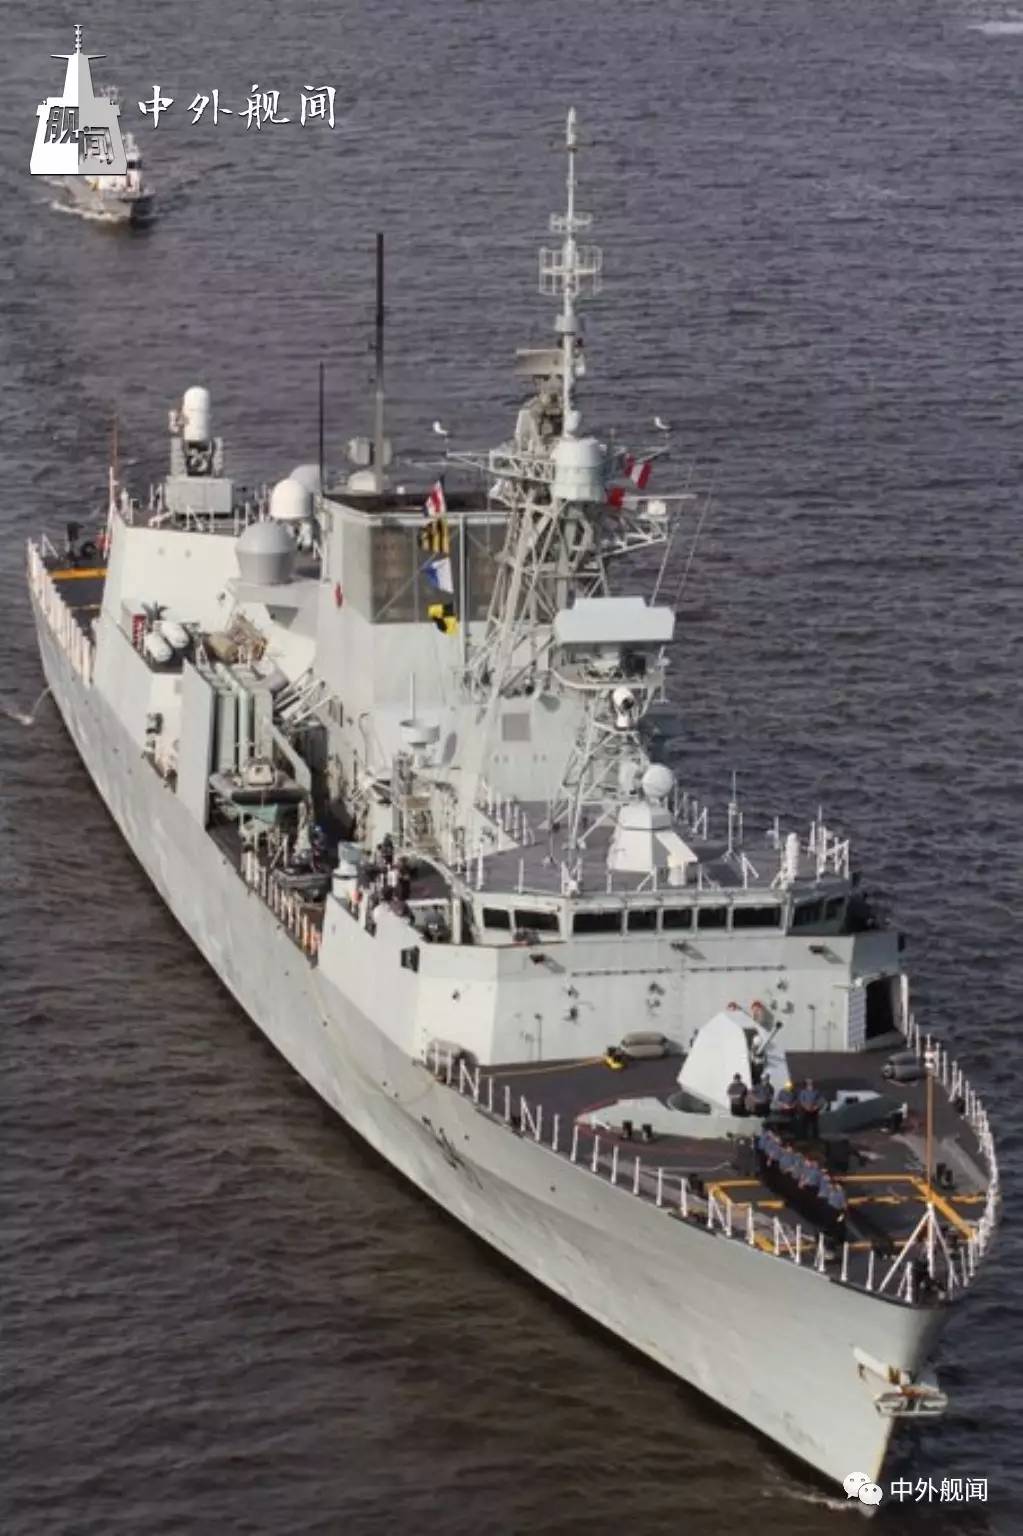 7月15日,皇家加拿大海军哈利法克斯级护卫舰 "渥太华"号(hmcs